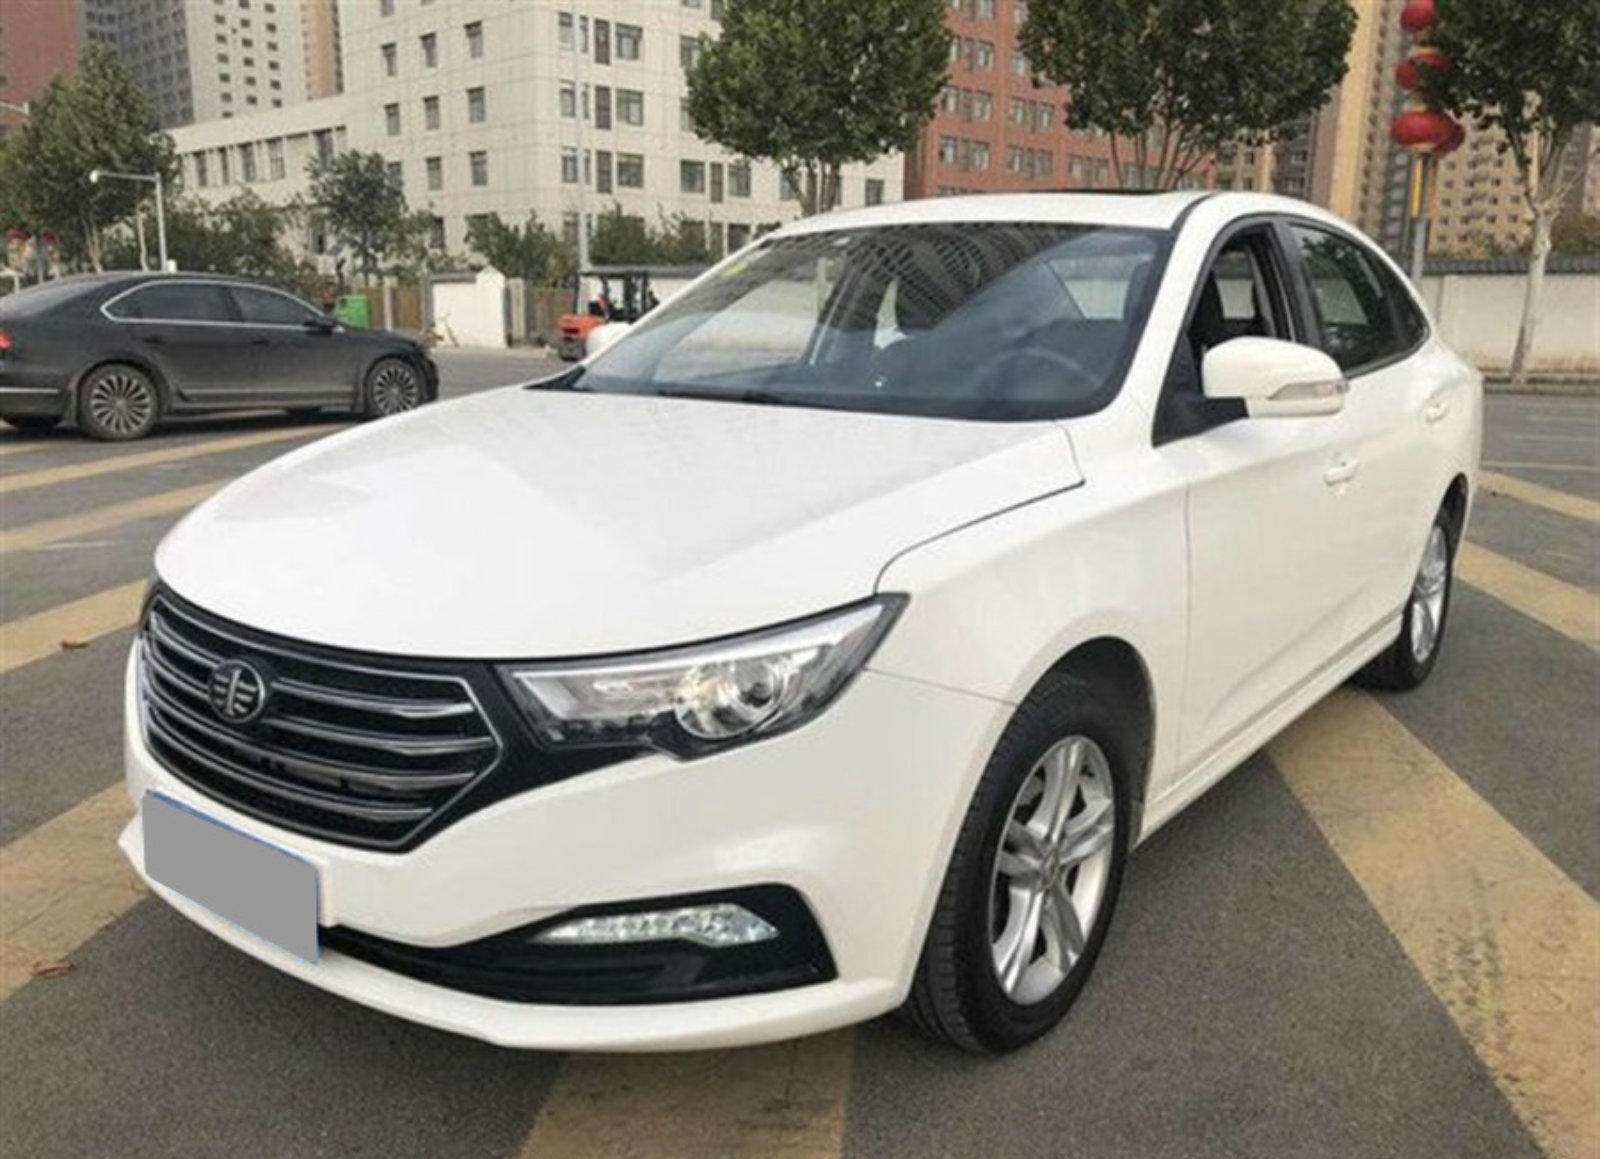 中国第一汽车集团公司召回部分奔腾B30汽车